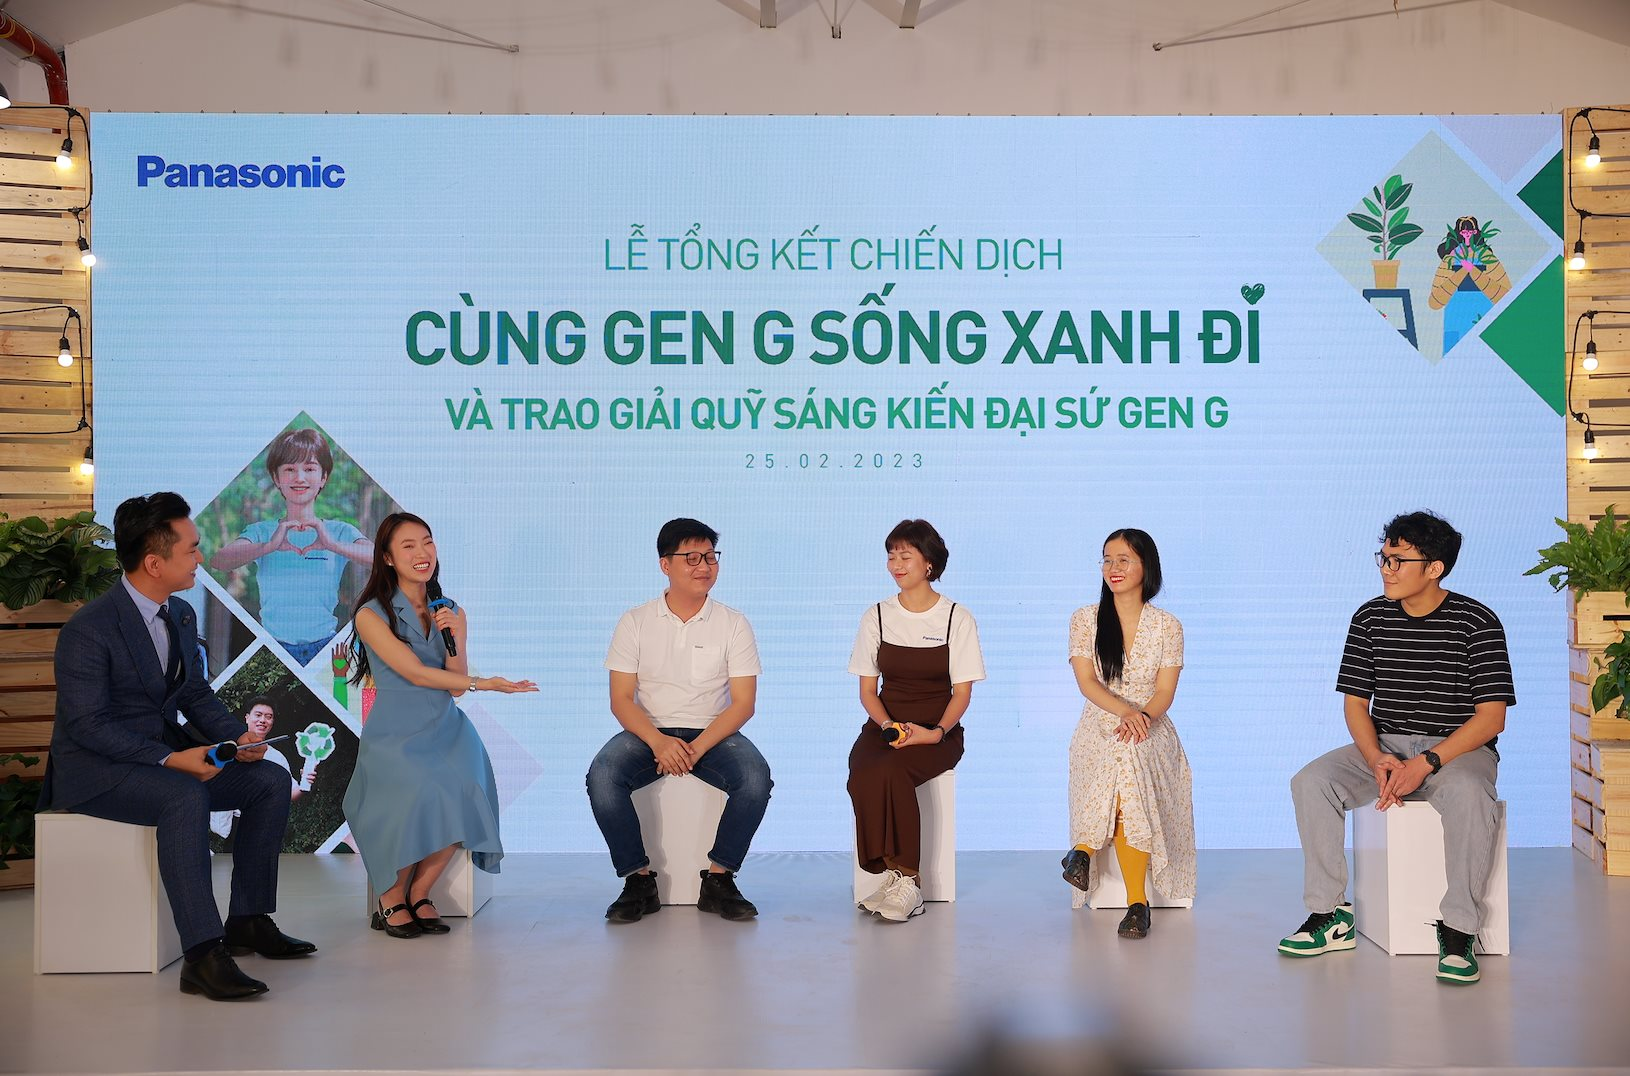 Panasonic thúc đẩy người trẻ sống xanh, giảm phát thải 5,4 tấn CO2 mỗi tuần - Ảnh 1.